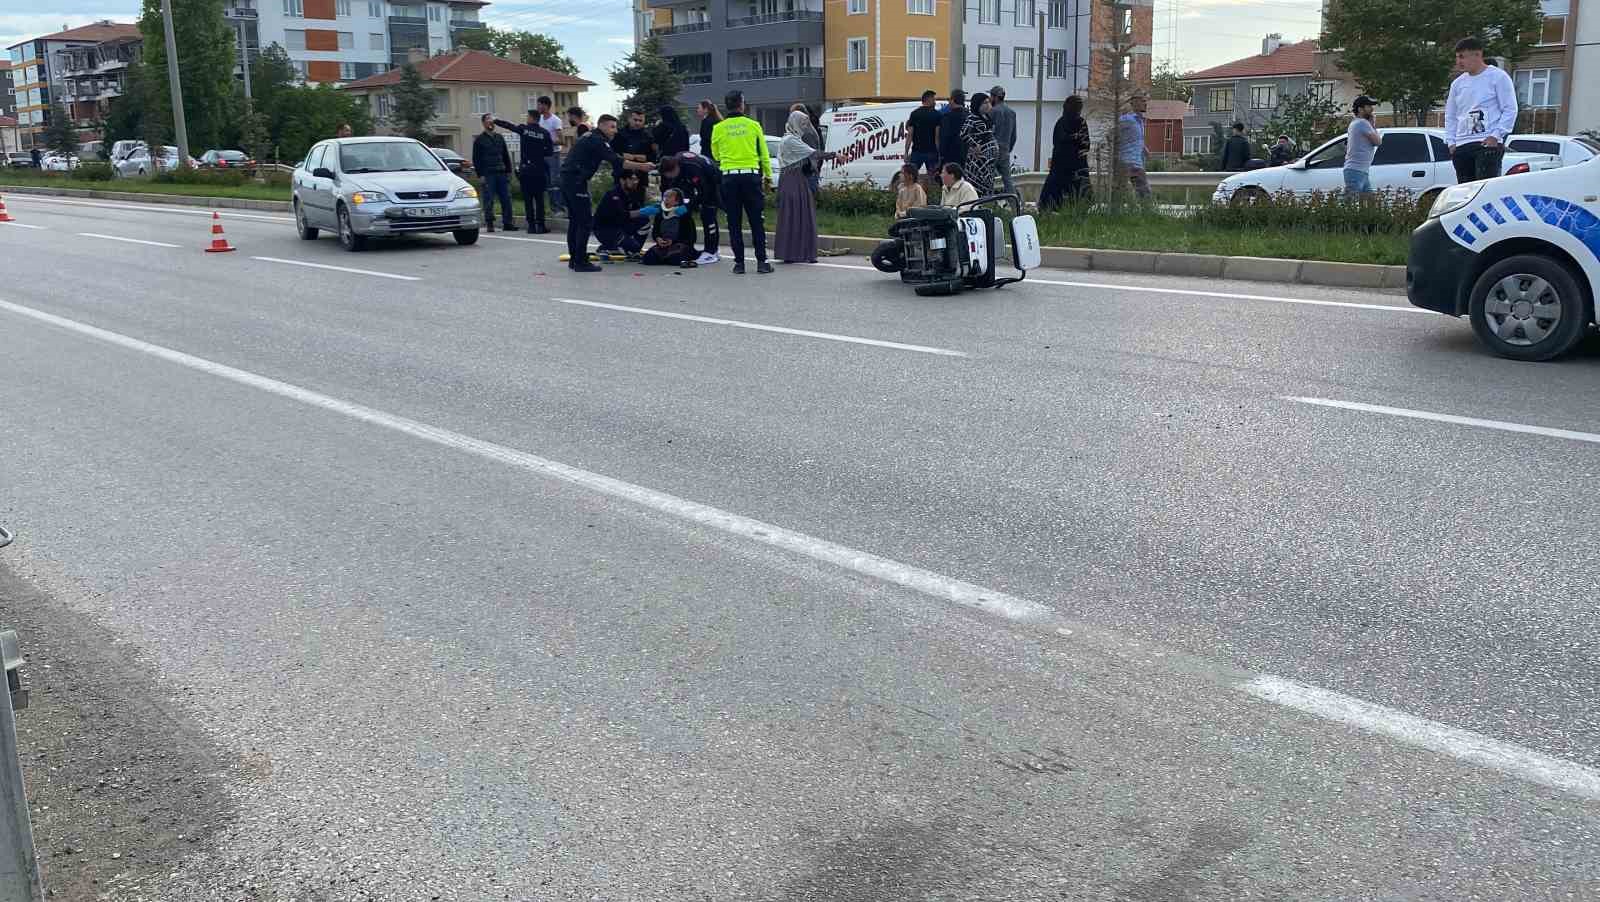 Konya’da üç tekerlekli bisiklet otomobille çarpıştı: 1 yaralı
